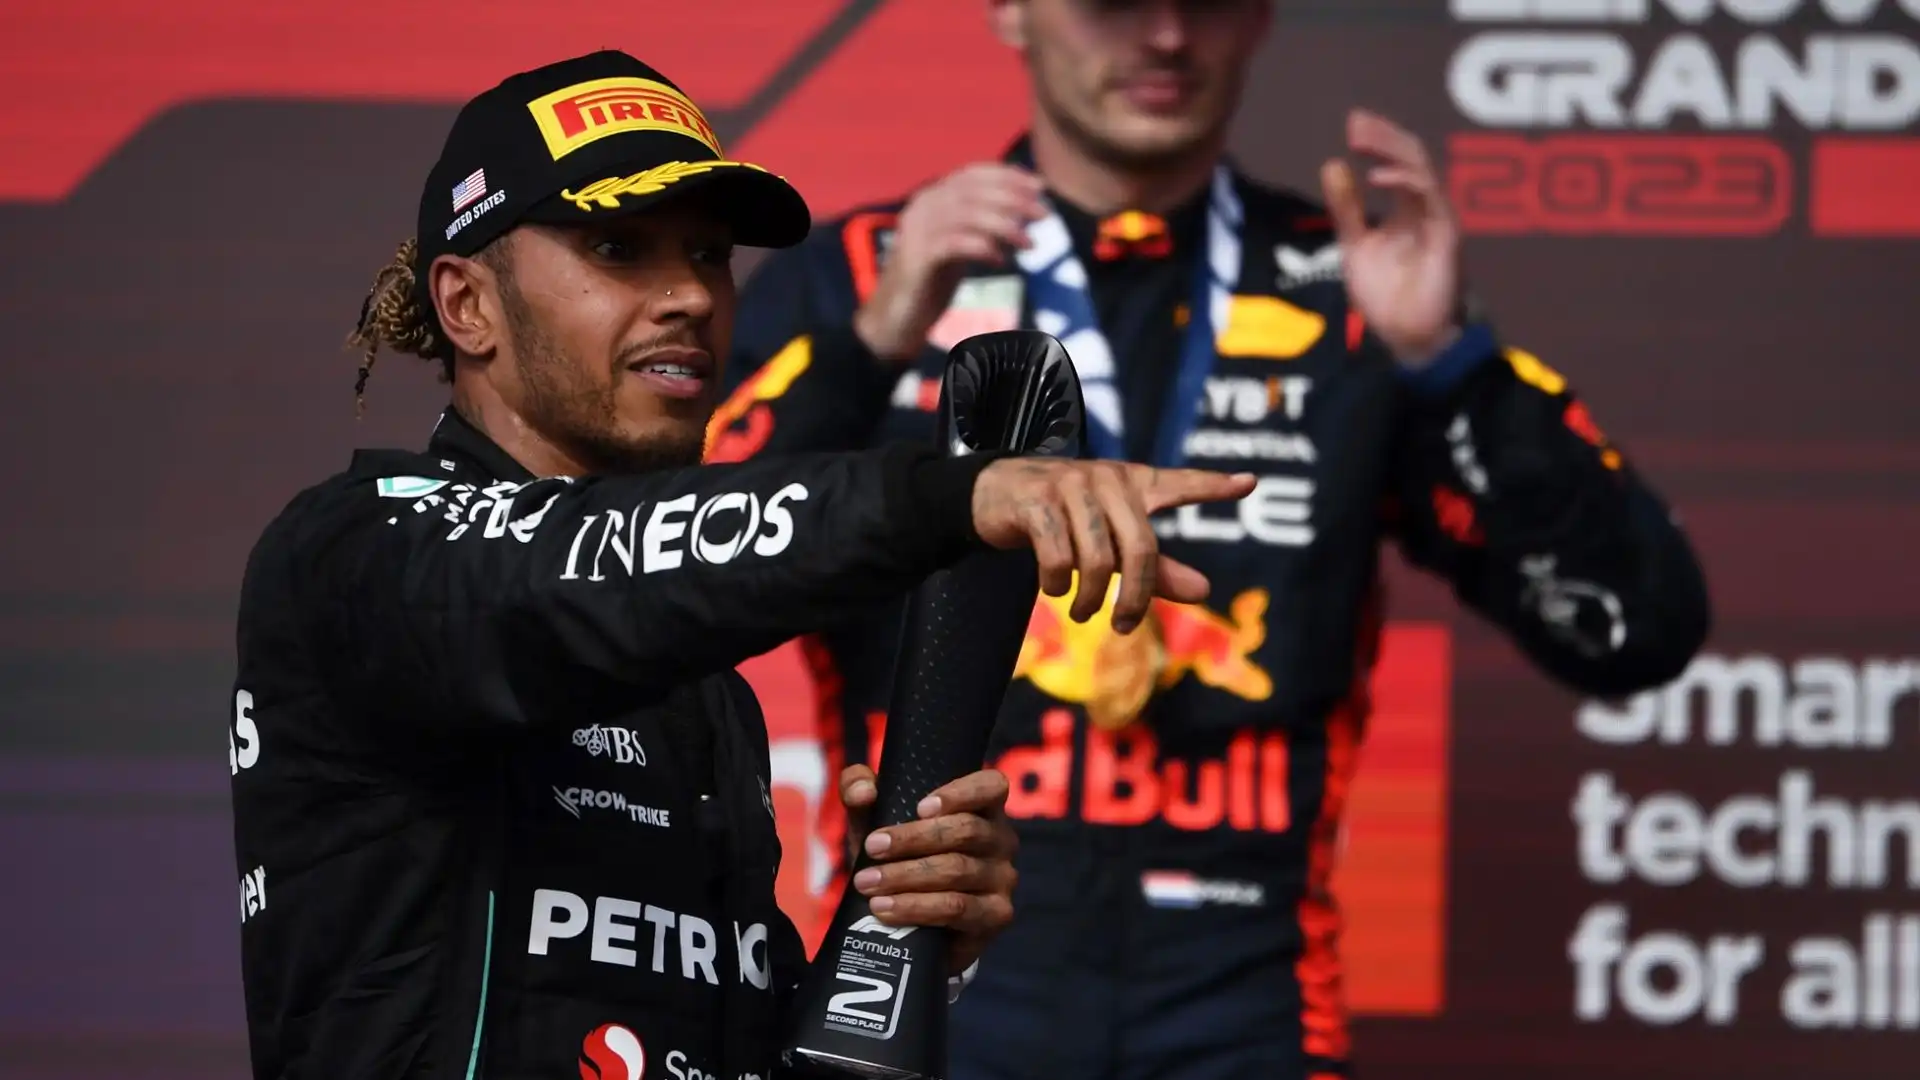 Secondo Hamilton, la Red Bull non ha aiutato, e in alcuni casi ha penalizzato Perez